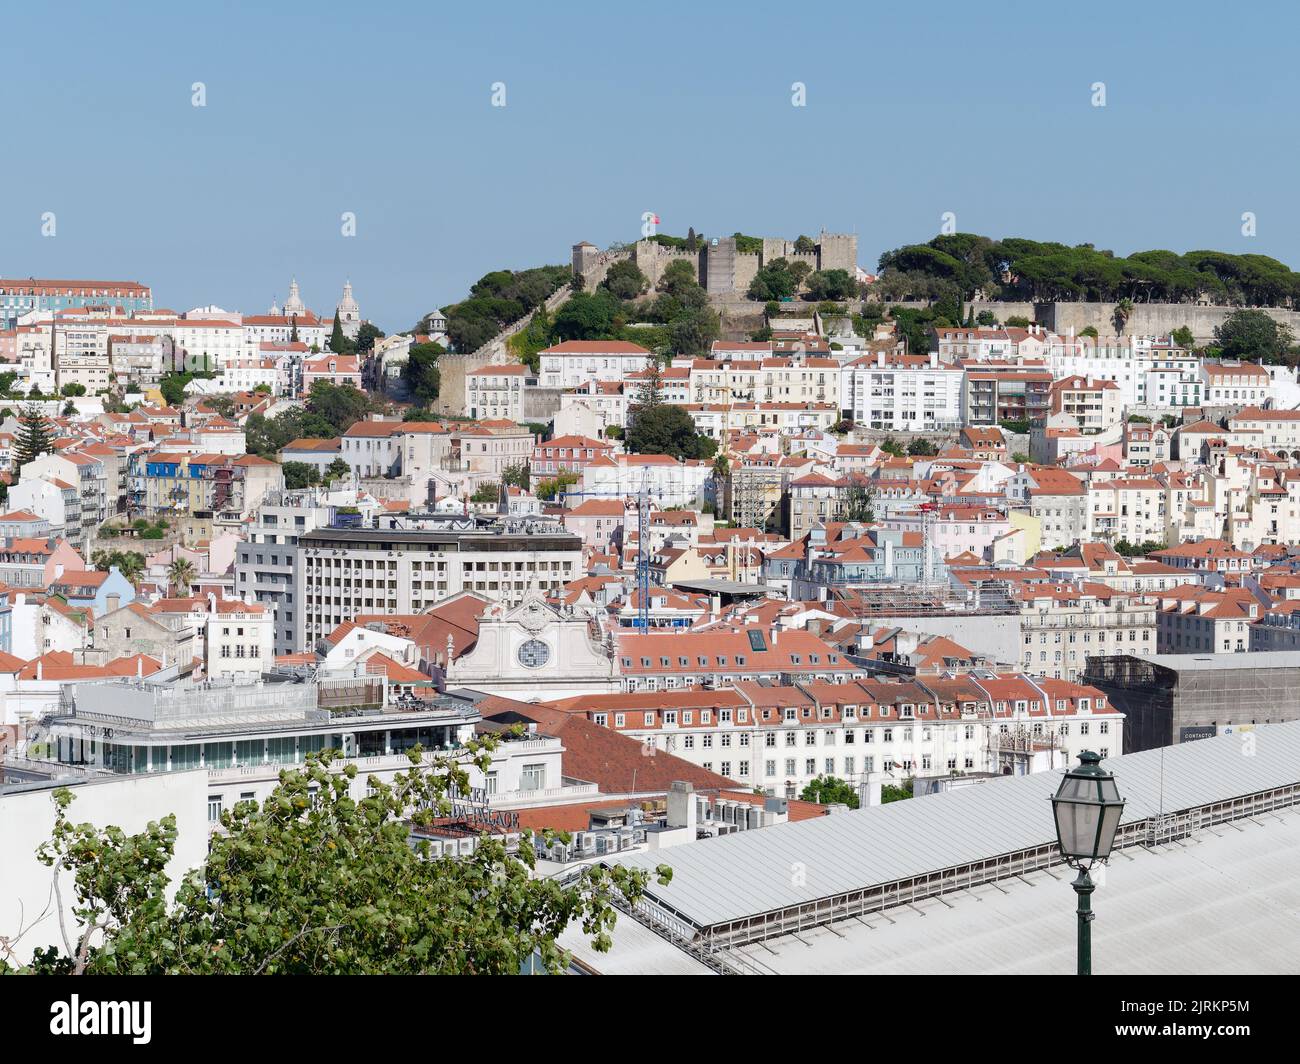 Vista dal punto panoramico (Miradouro) São pedro de Alcântara a Lisbona, Portogallo, in una serata estiva sui tetti della città. Alle spalle del castello di St Georges. Foto Stock